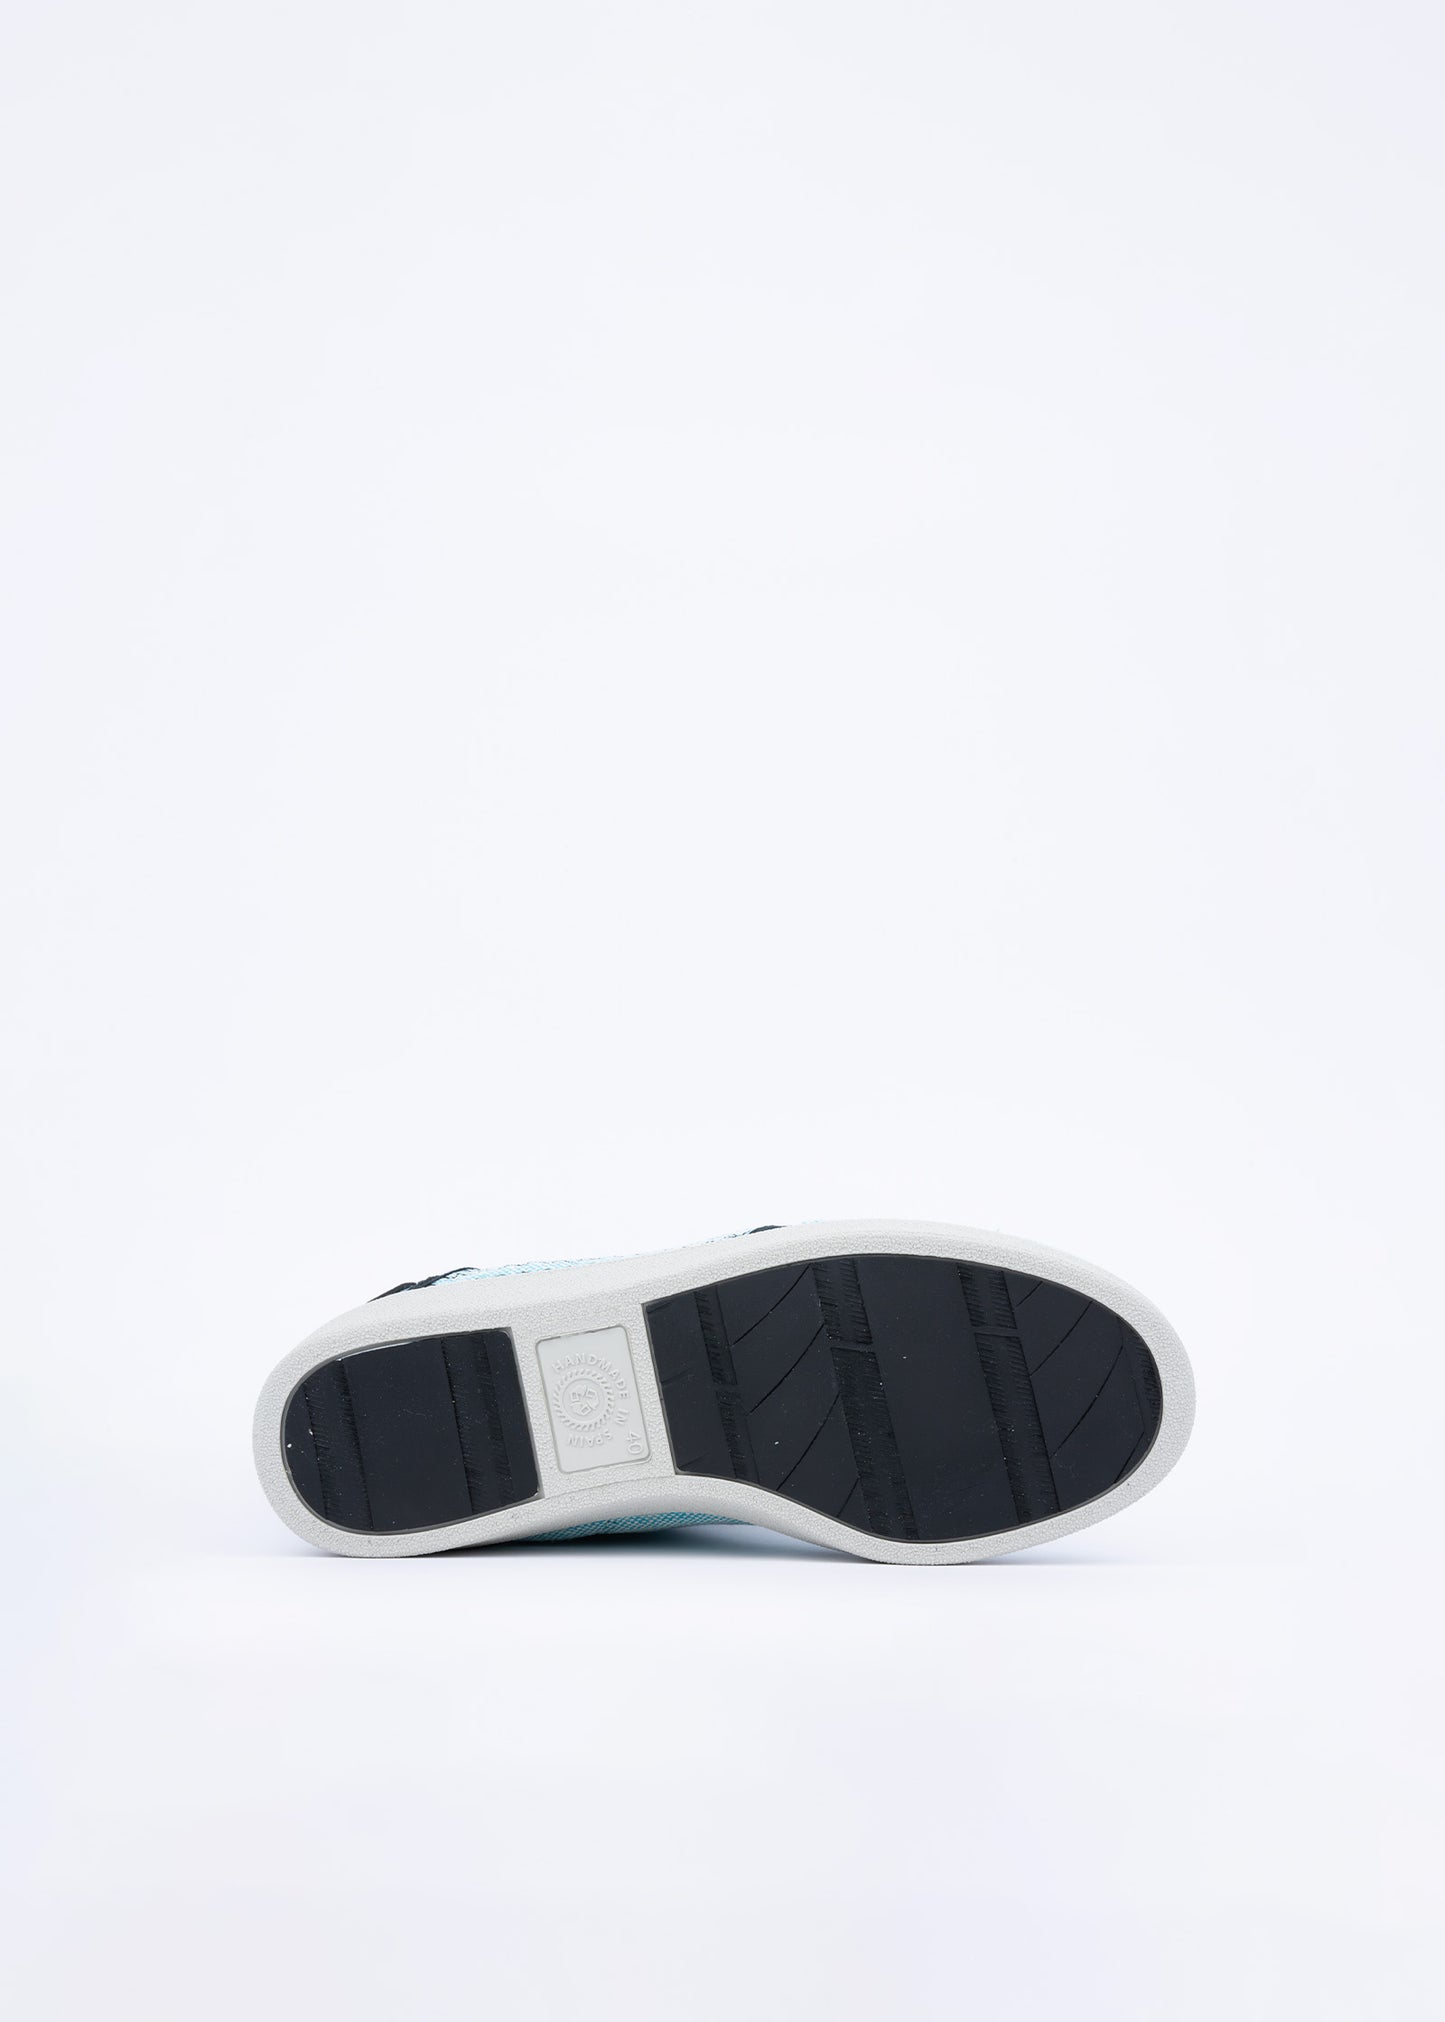 basq Rokaputa Turquoise - 100% Sustainable Shoes